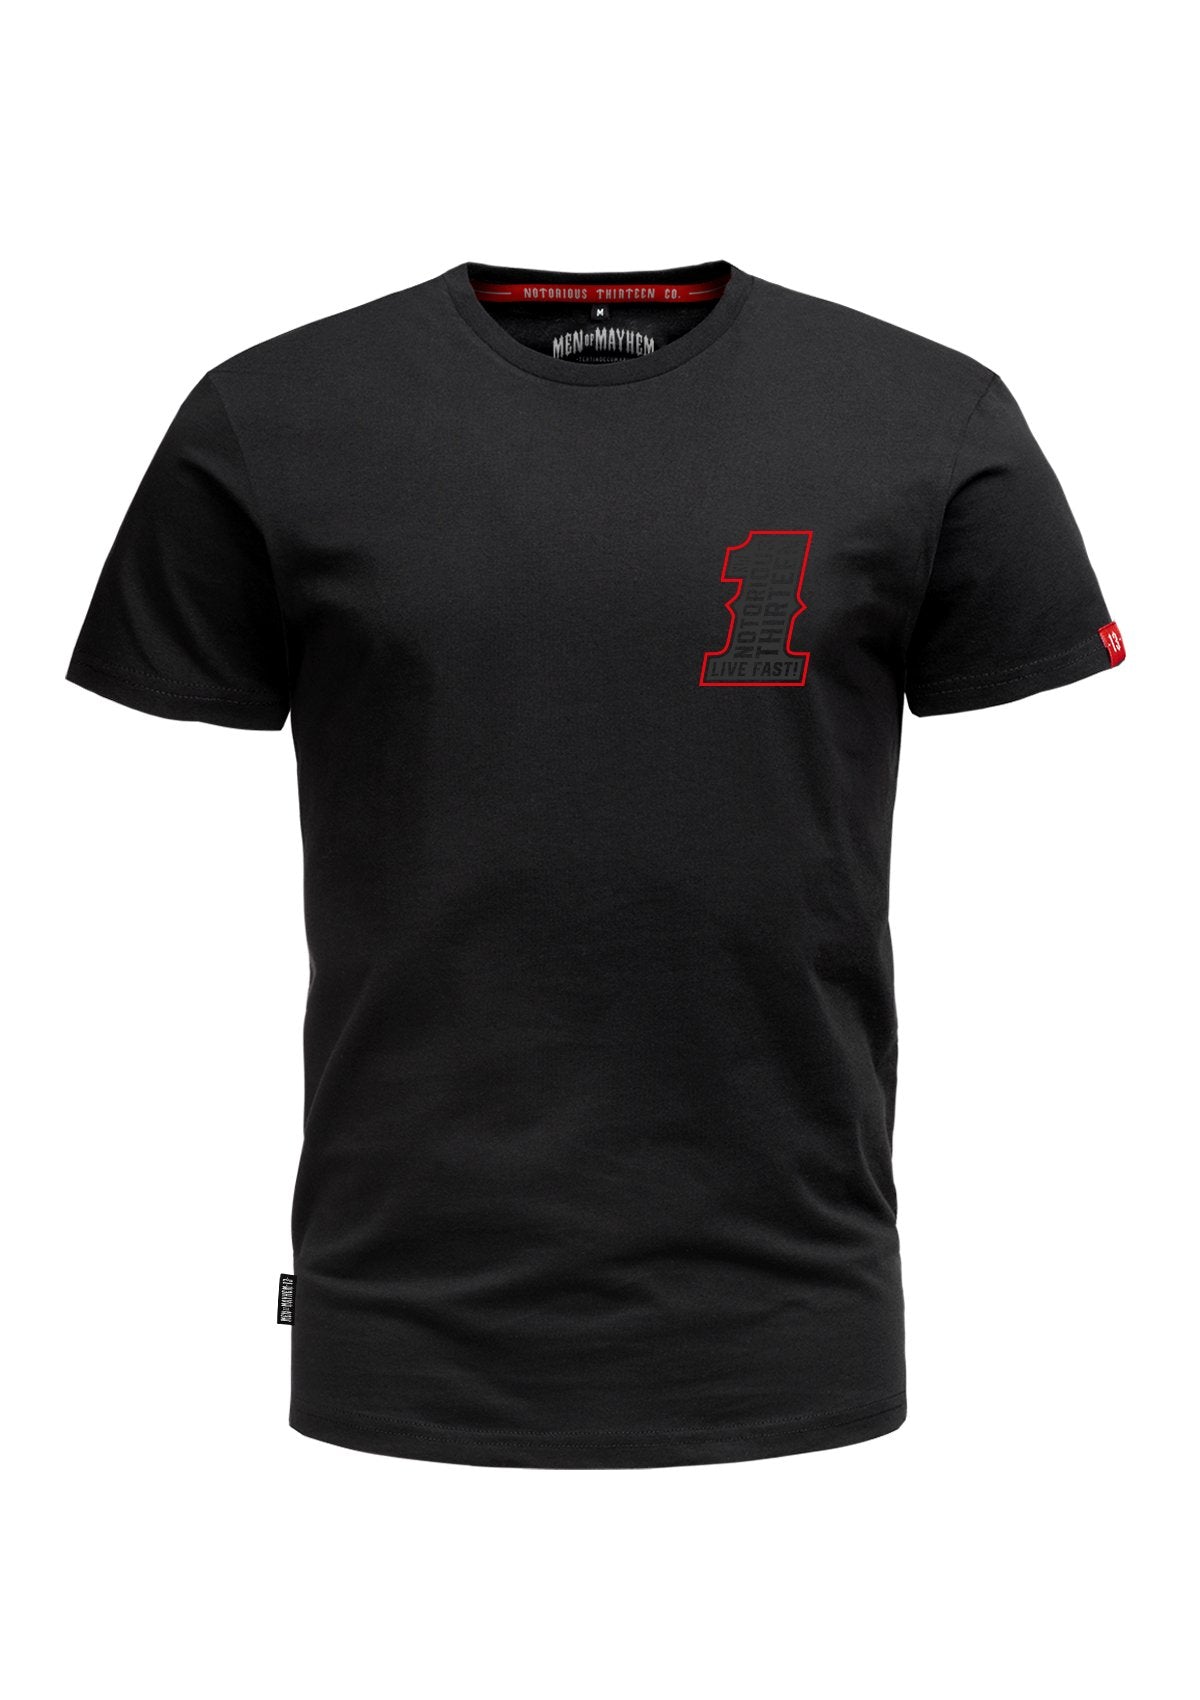 T-Shirt ONE S/G/R - MEN OF MAYHEM - ALAIKO-EXCHANGES-MM-M-1010-TO-SGR - black - Men